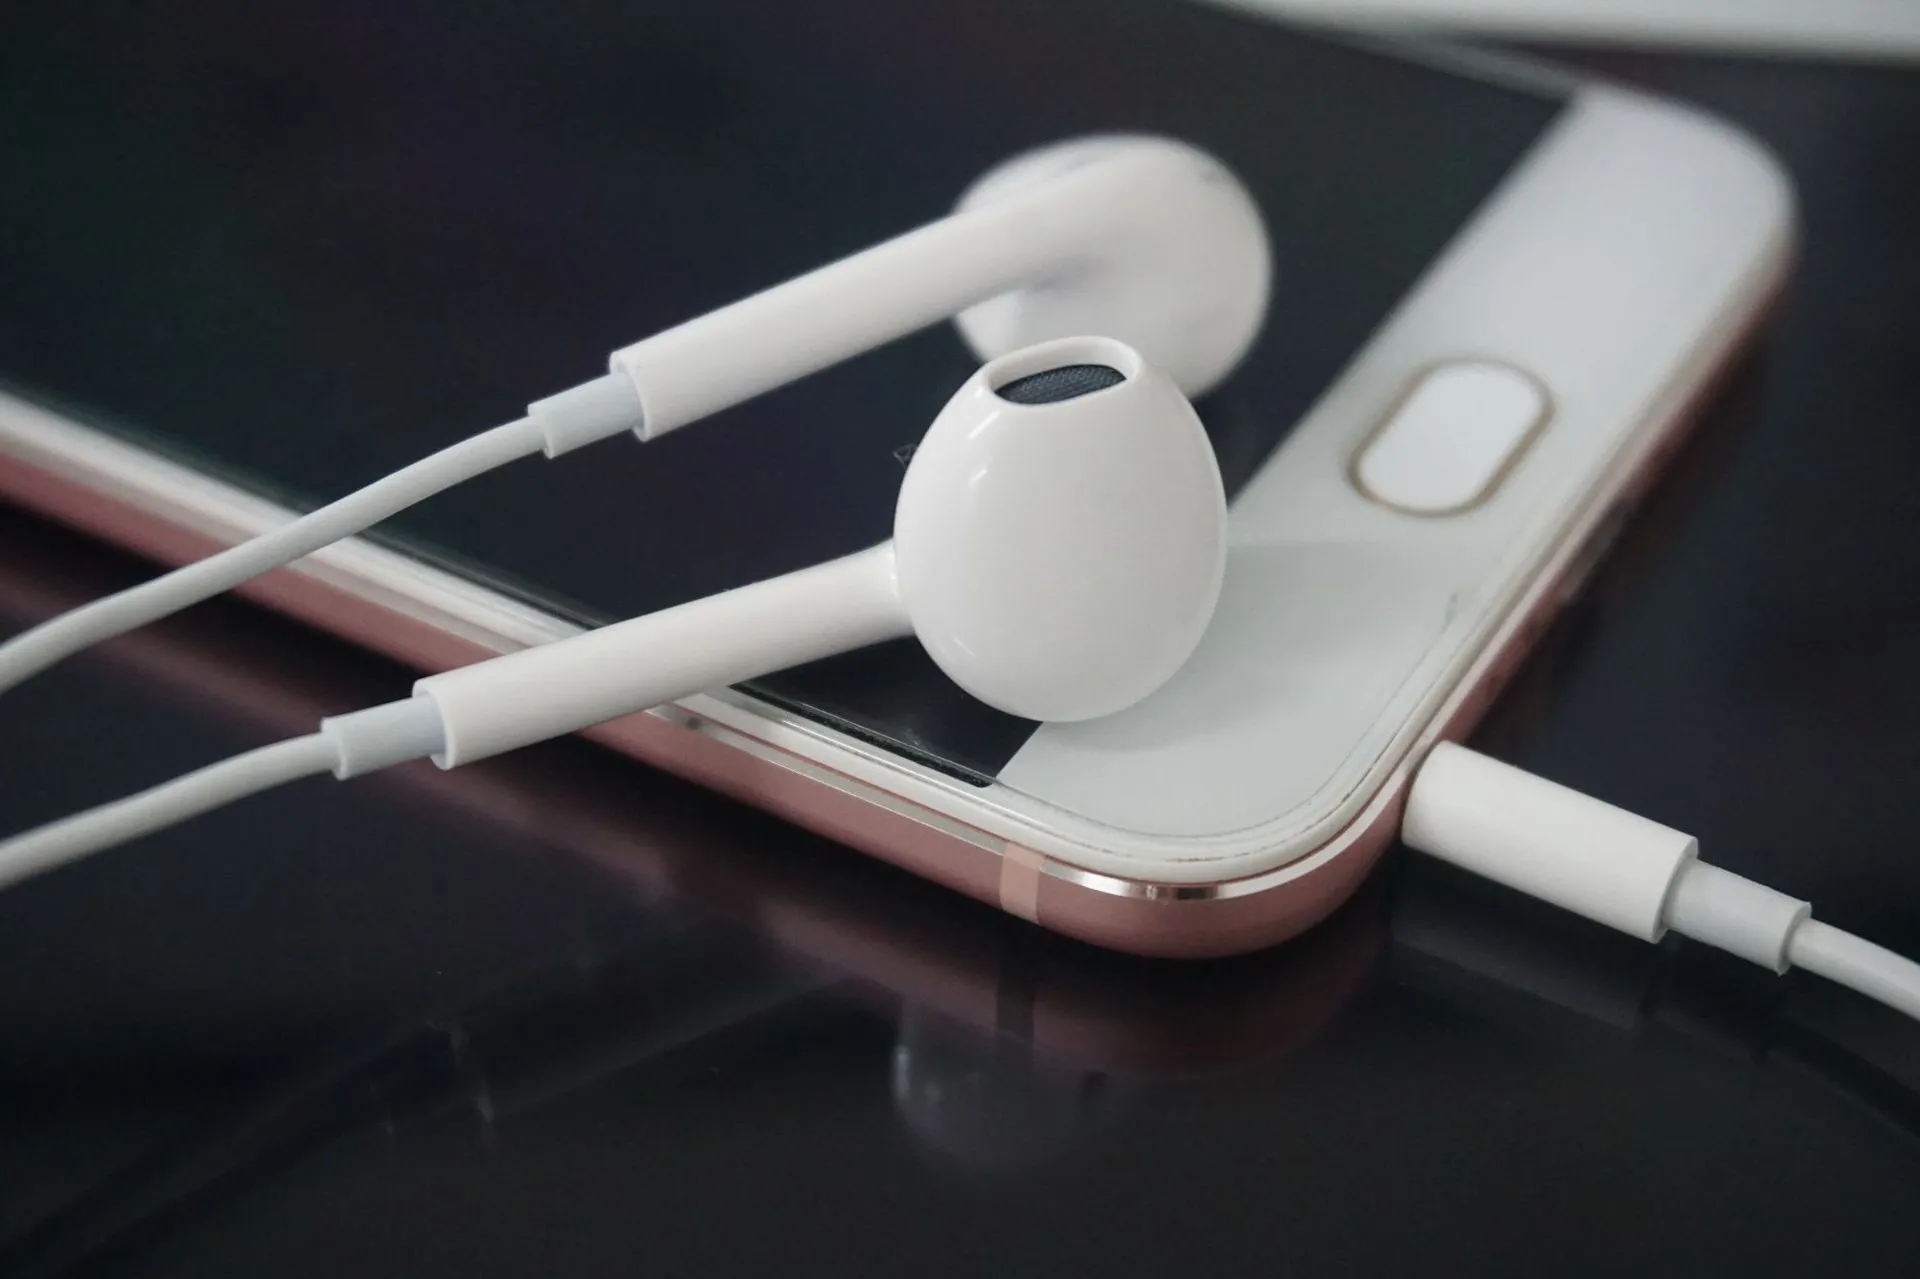 Xiaomi Huawei Kulaklık Mikrofonu için 3,5mm Kablolu Kulaklık Kulakbuds Kulaklık Stereo Gürültü İzole